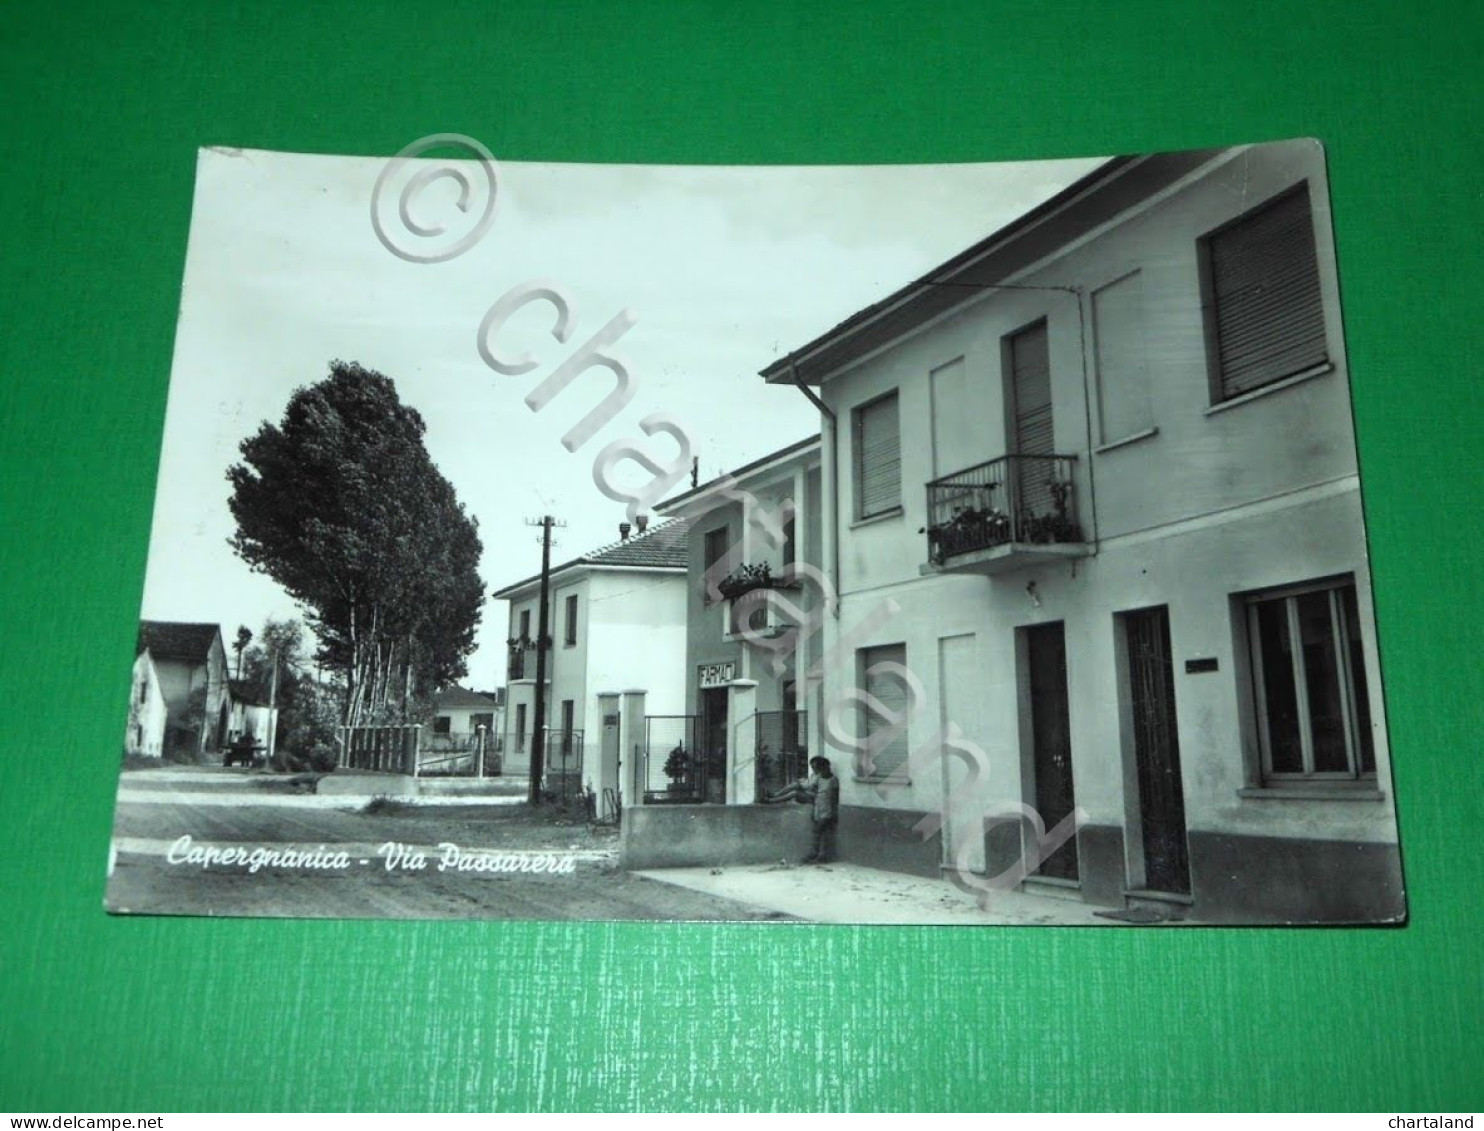 Cartolina Capergnanica - Via Passarera 1958 - Cremona